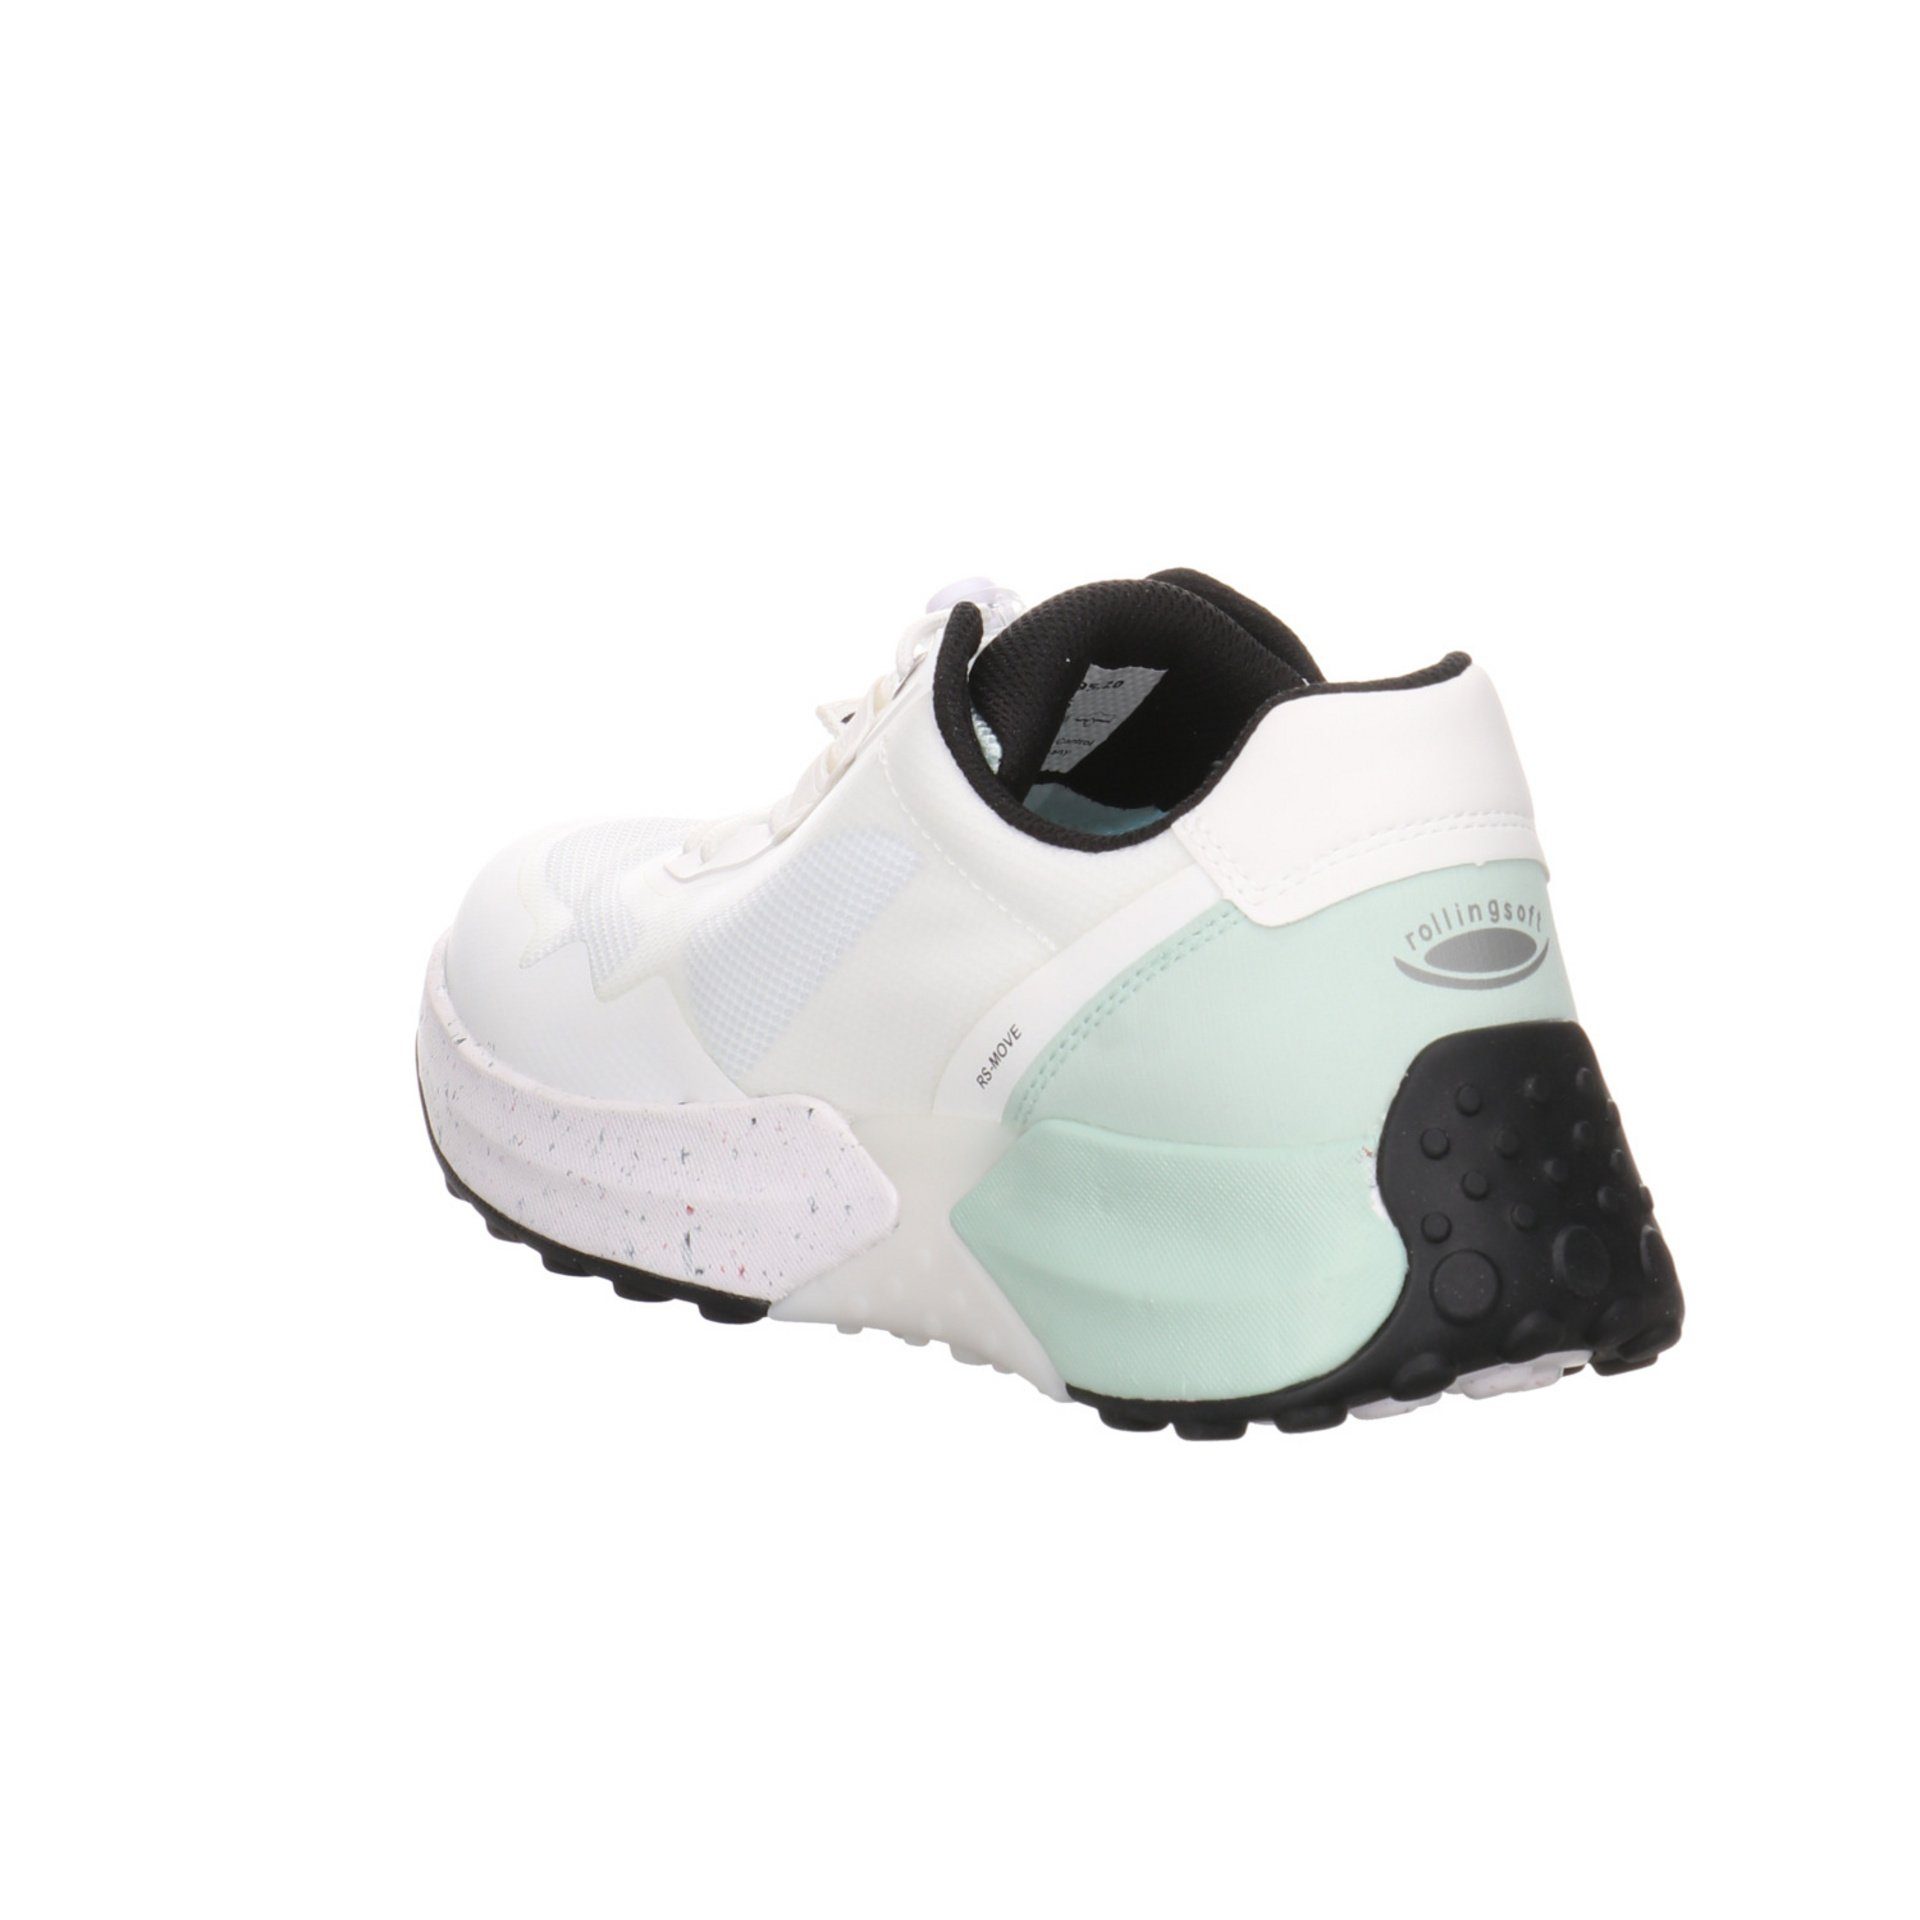 Gabor Damen Slipper Schuhe Rollingsoft Sneaker Synthetikkombination Sneaker Slip-On weiss/mint